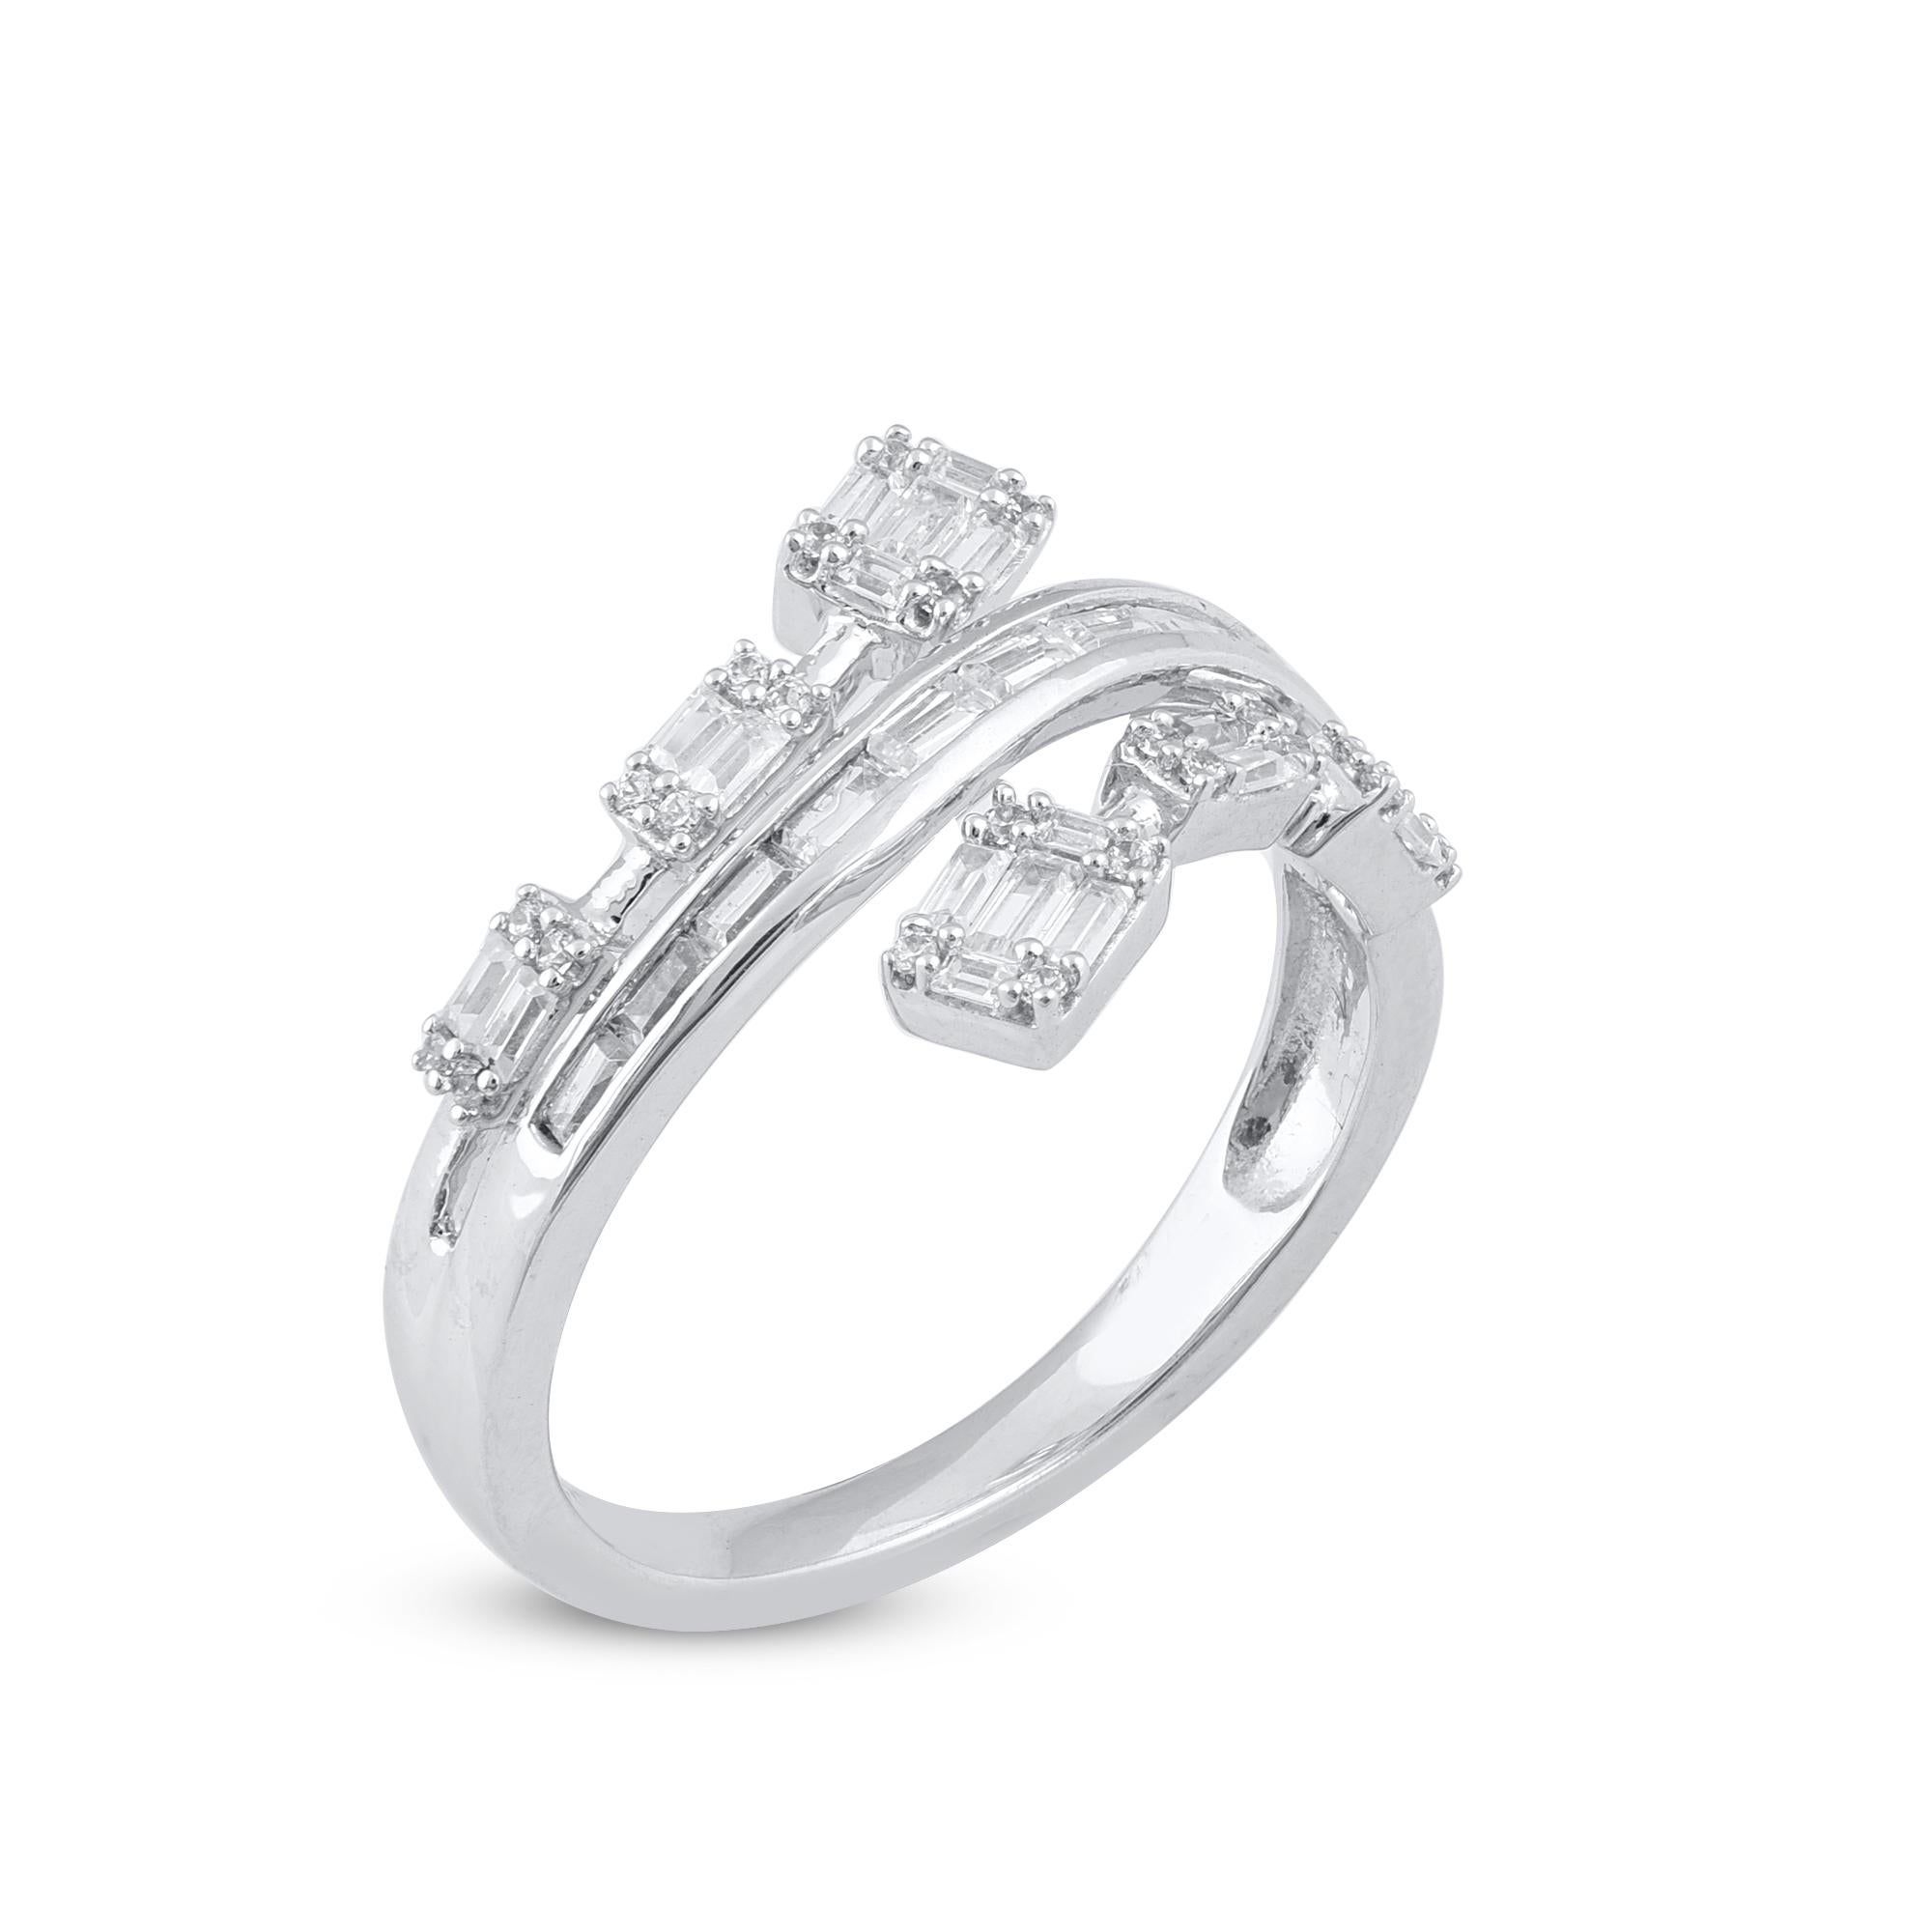 Sie wird den mühelosen Look dieses anmutigen, diamantenen Crossover-Rings bewundern, der wirklich exquisit ist. Der Ring ist aus 14-karätigem Gold in Weiß-, Rosé- oder Gelbgold gefertigt und verfügt über 24 runde Brillanten und 29 weiße